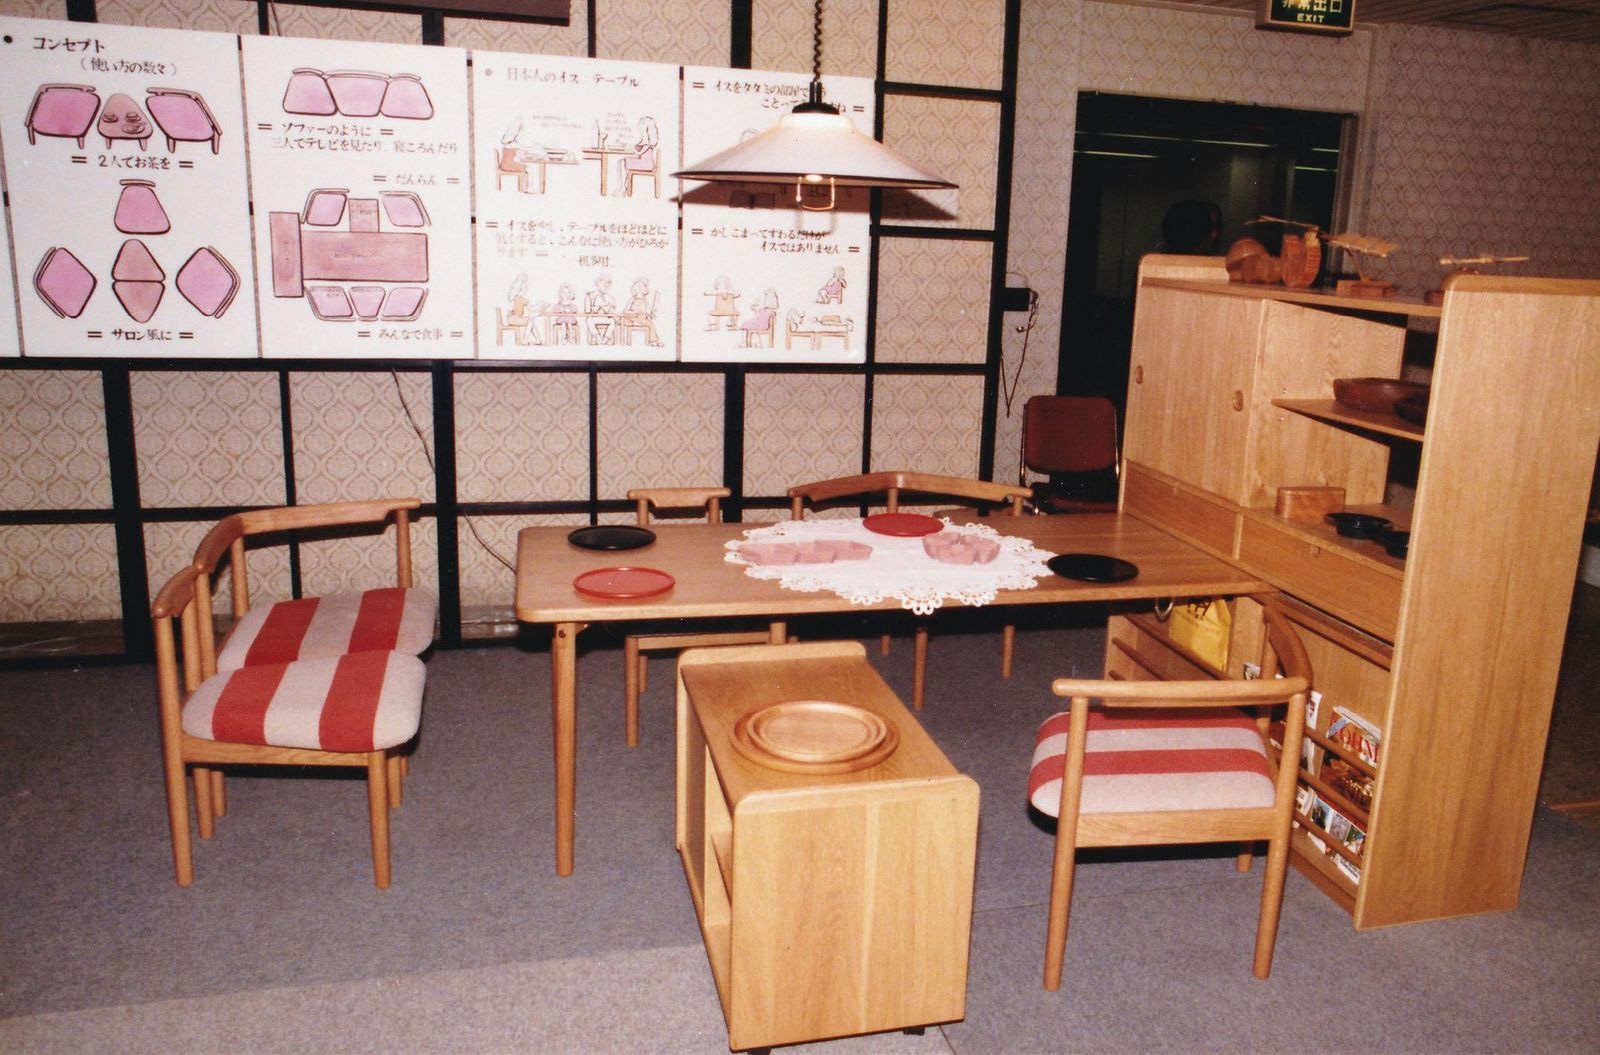 1975 年(昭和50年)代の家具業界と工芸指導所